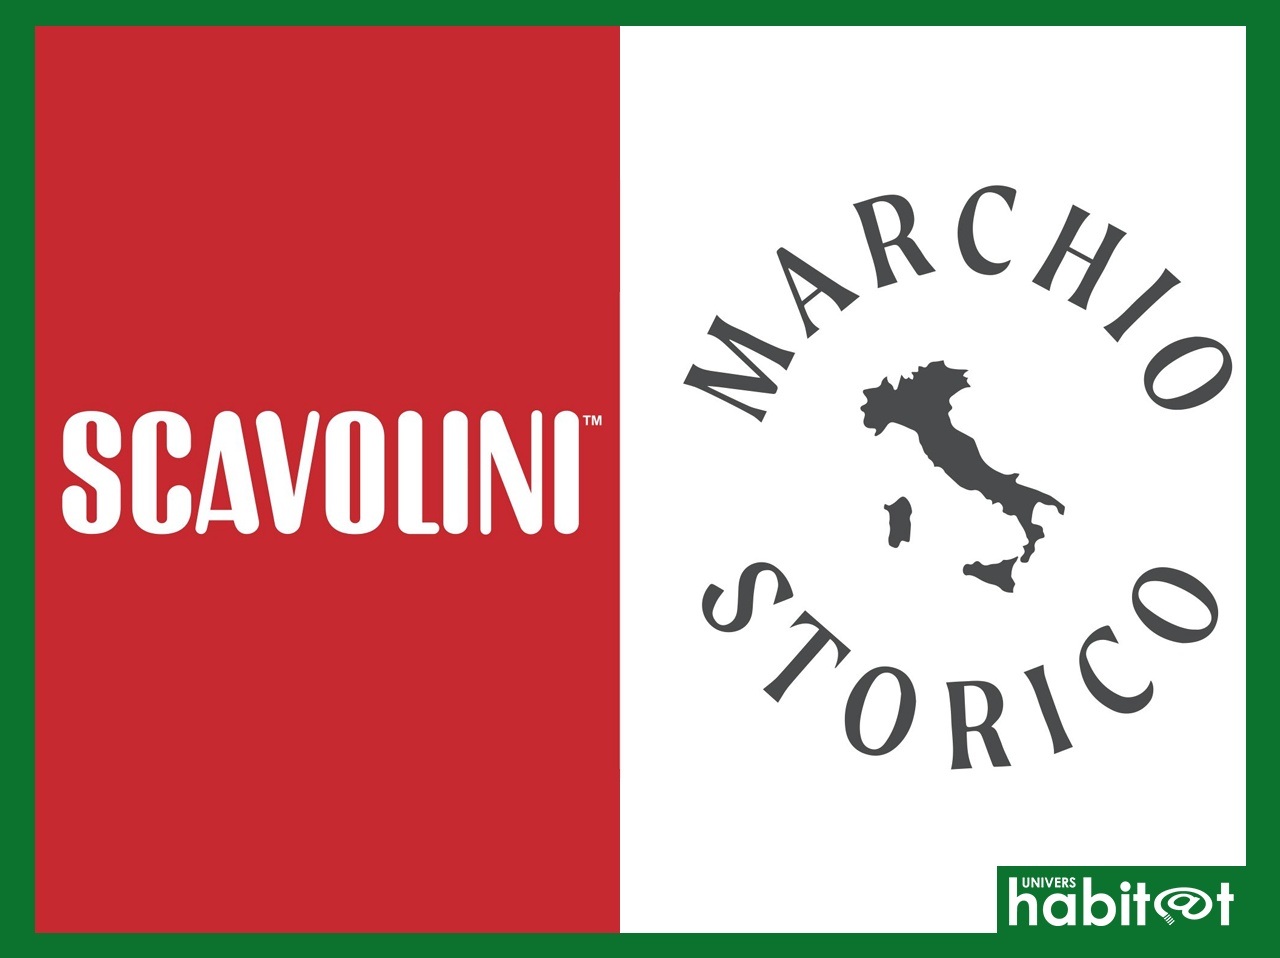 Scavolini reconnue marque historique d’intérêt national en Italie